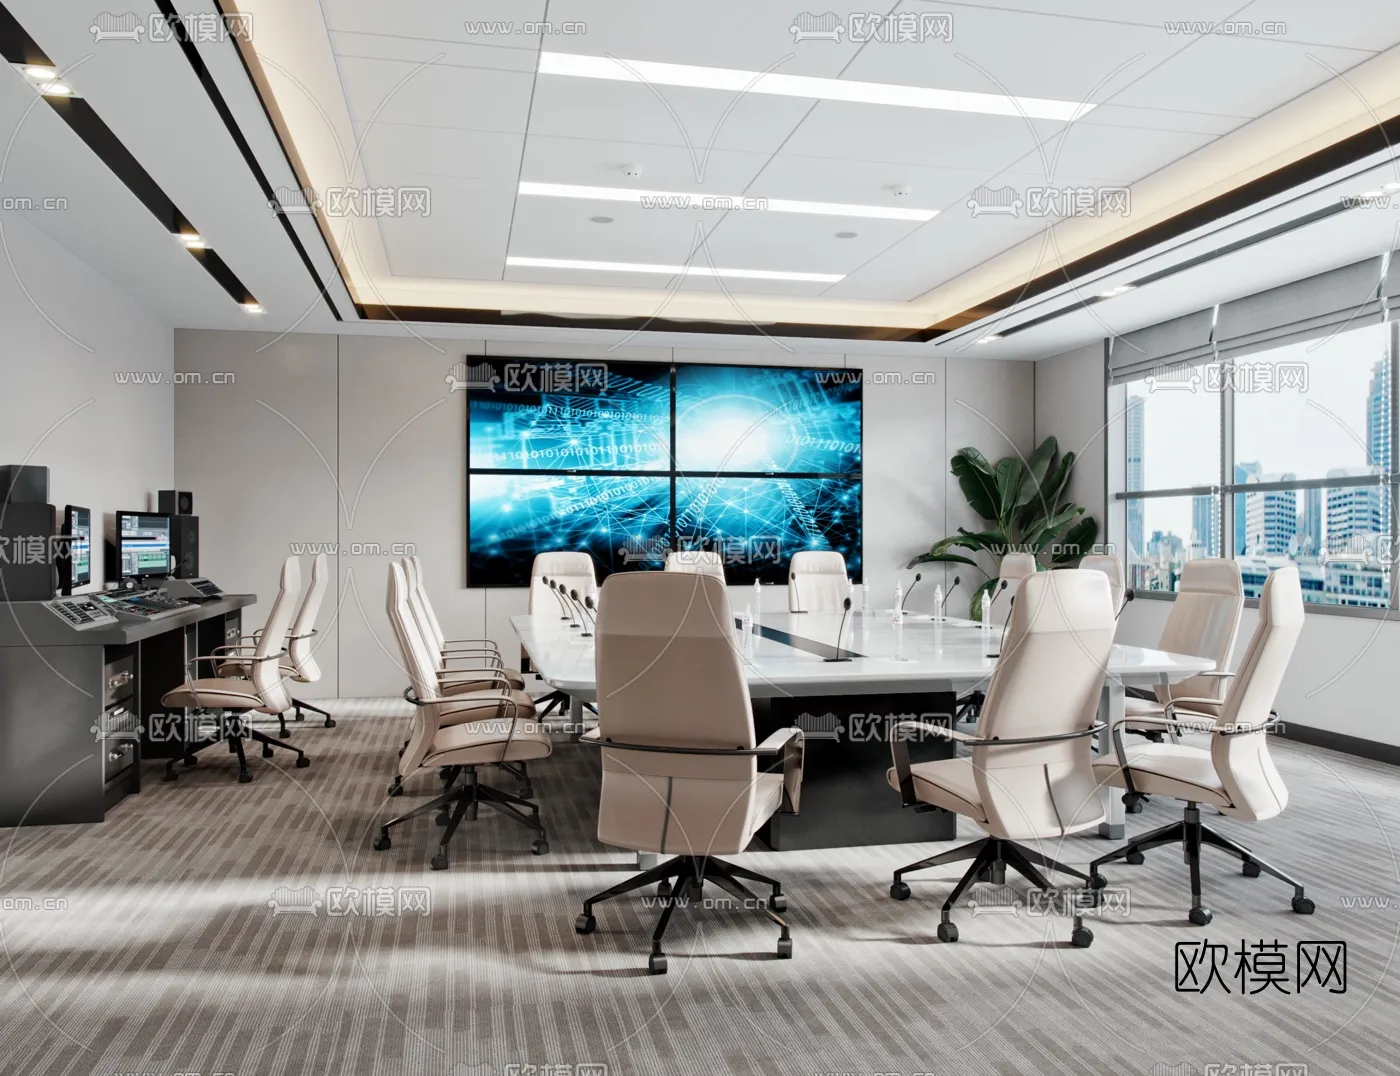 Meeting Room 3D Scenes – 1476